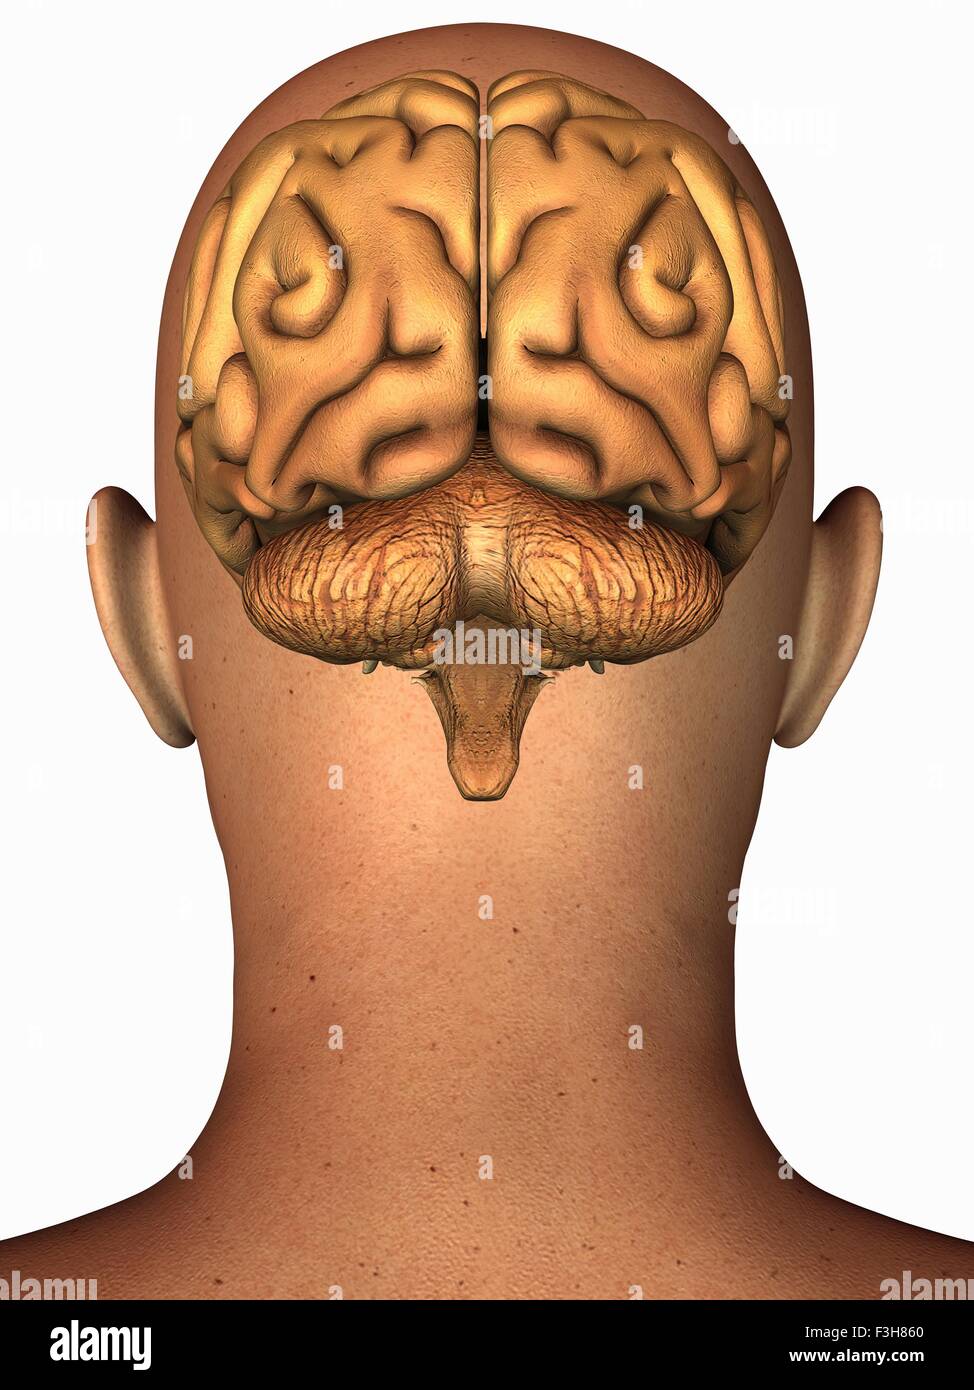 Anatomische Darstellung des menschlichen Gehirns in der hinteren Ansicht überlagert auf dem Kopf Stockfoto